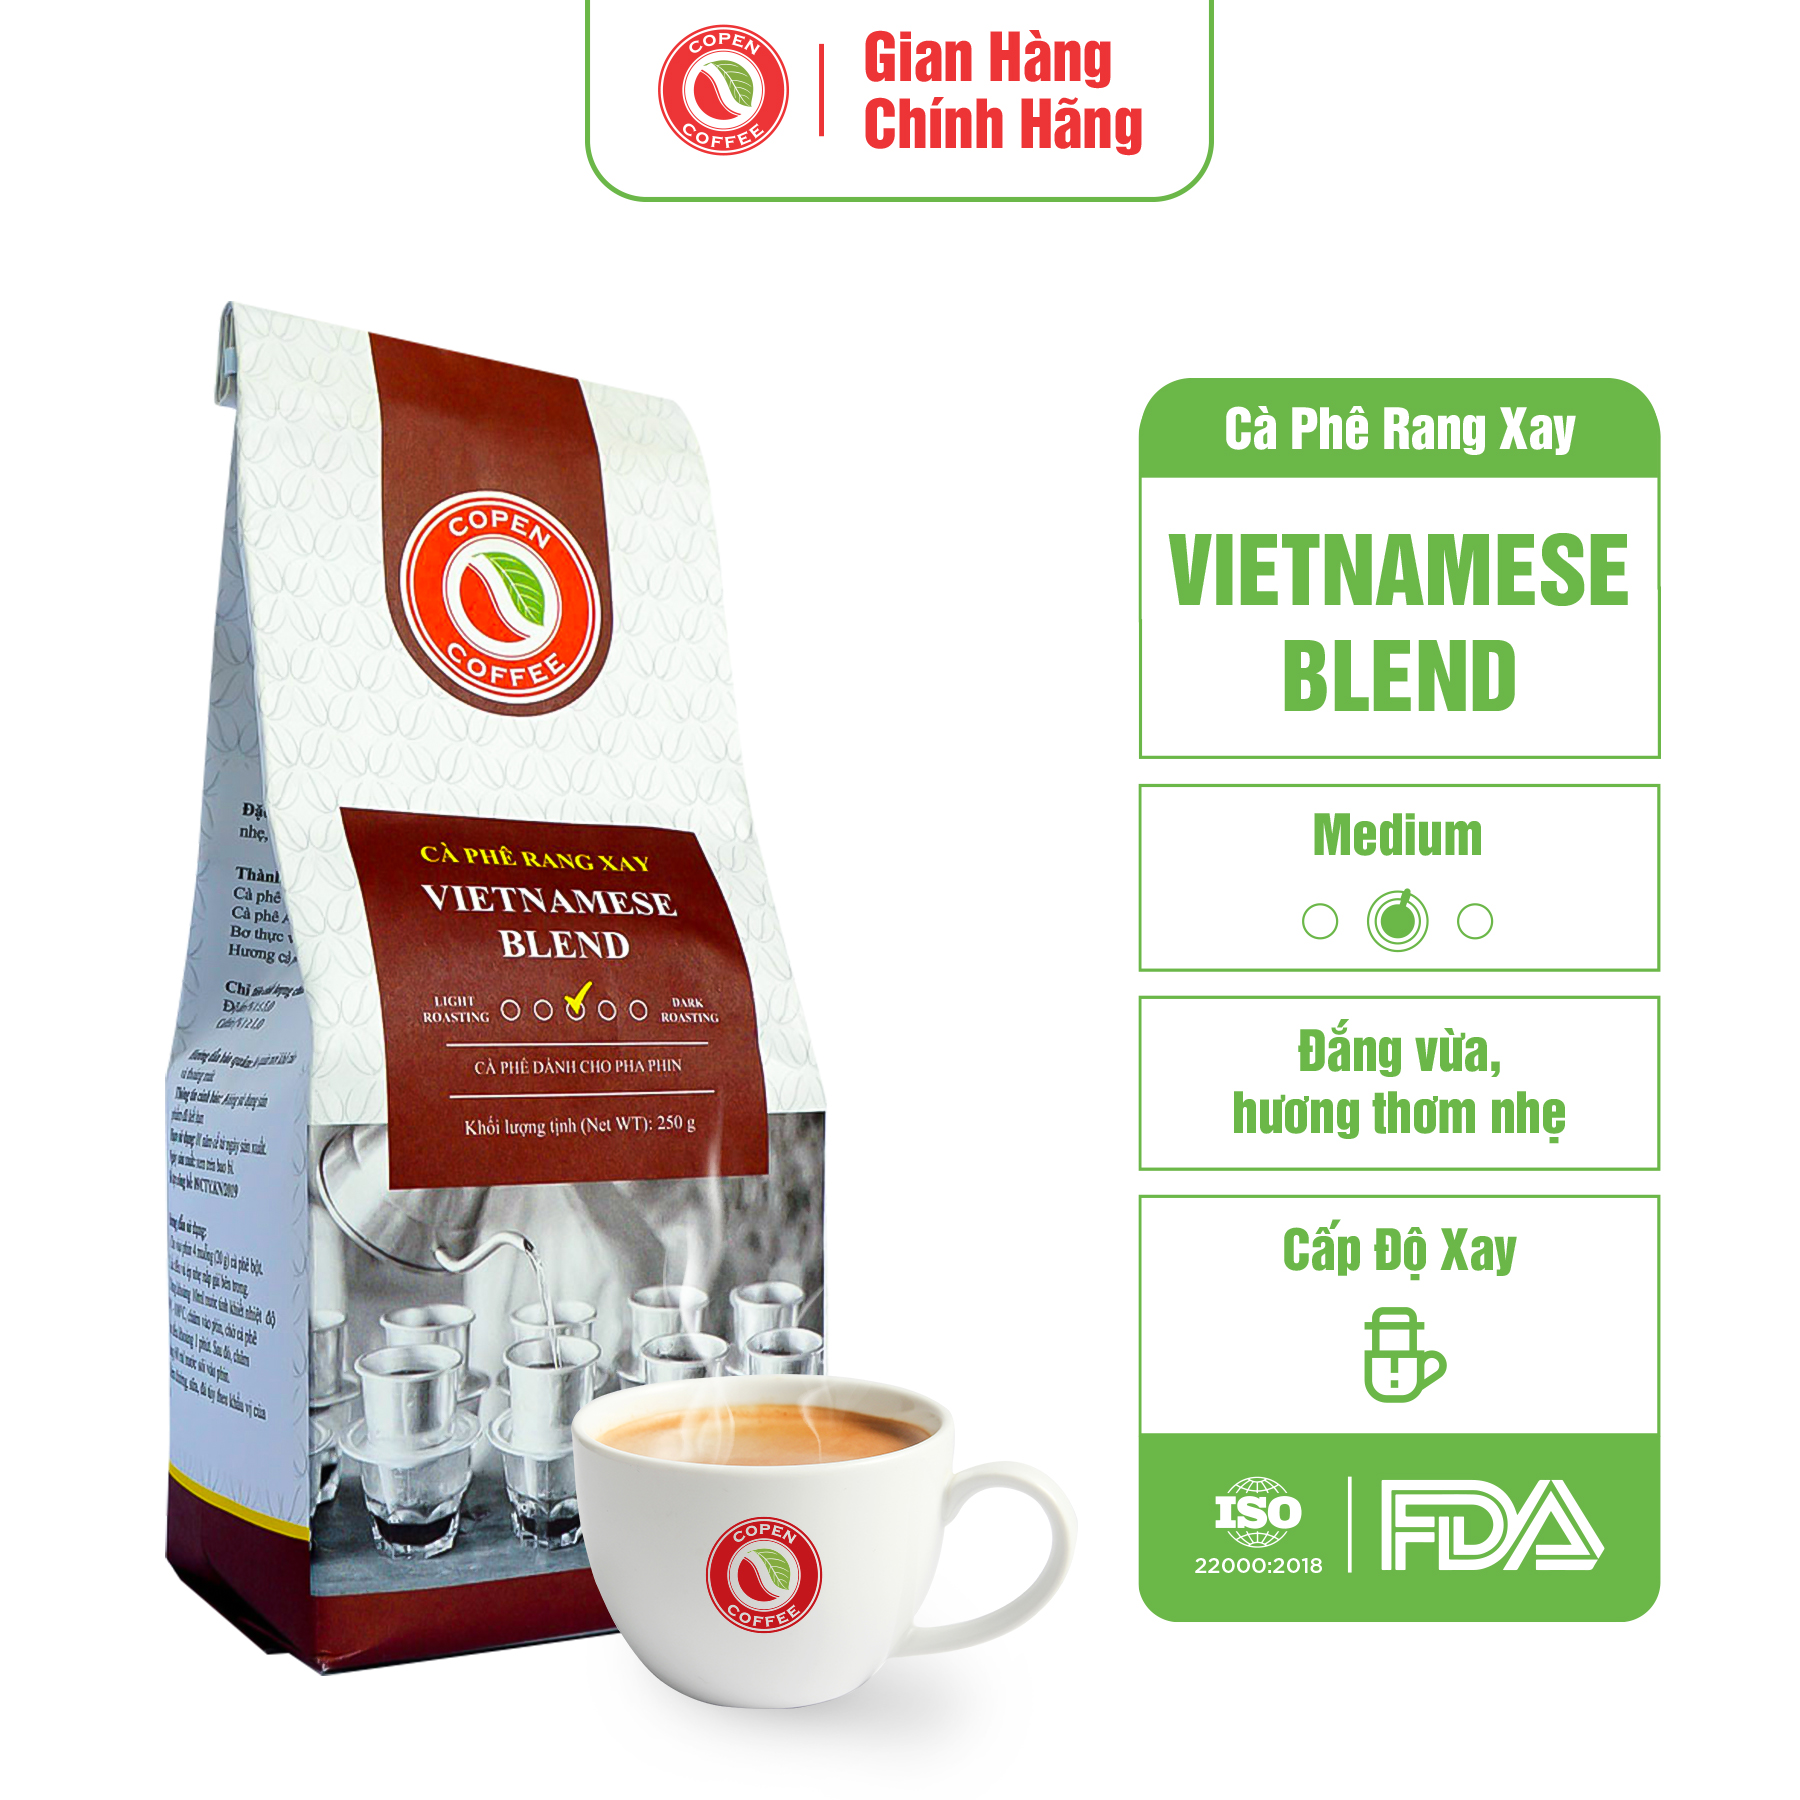 Cà phê rang xay Copen coffee Vietnamese Blend 250g